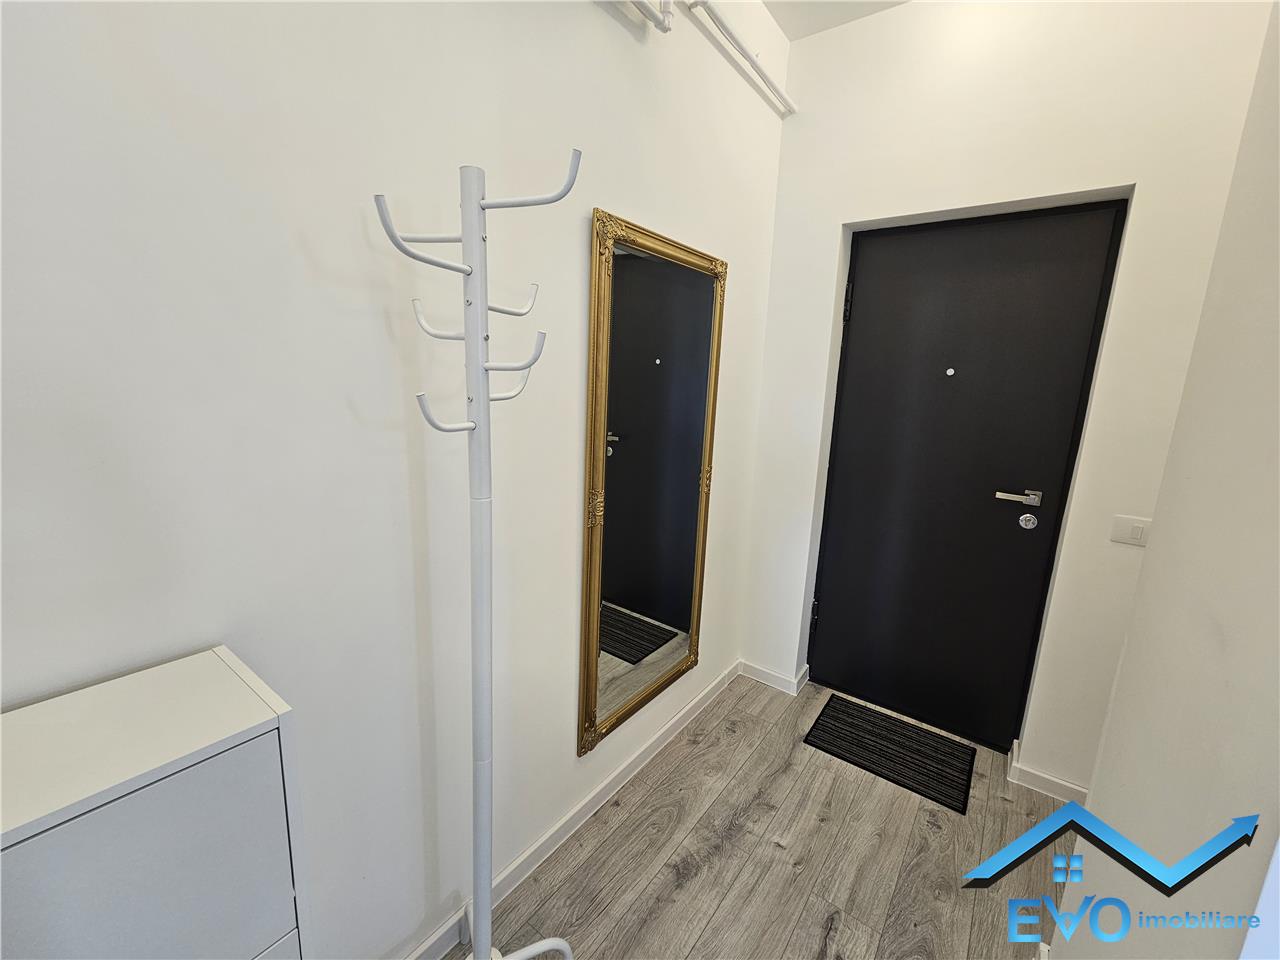 De inchiriat apartament nou cu 2 camere, la prima inchiriere, mobilat si utilat, in Visoianu